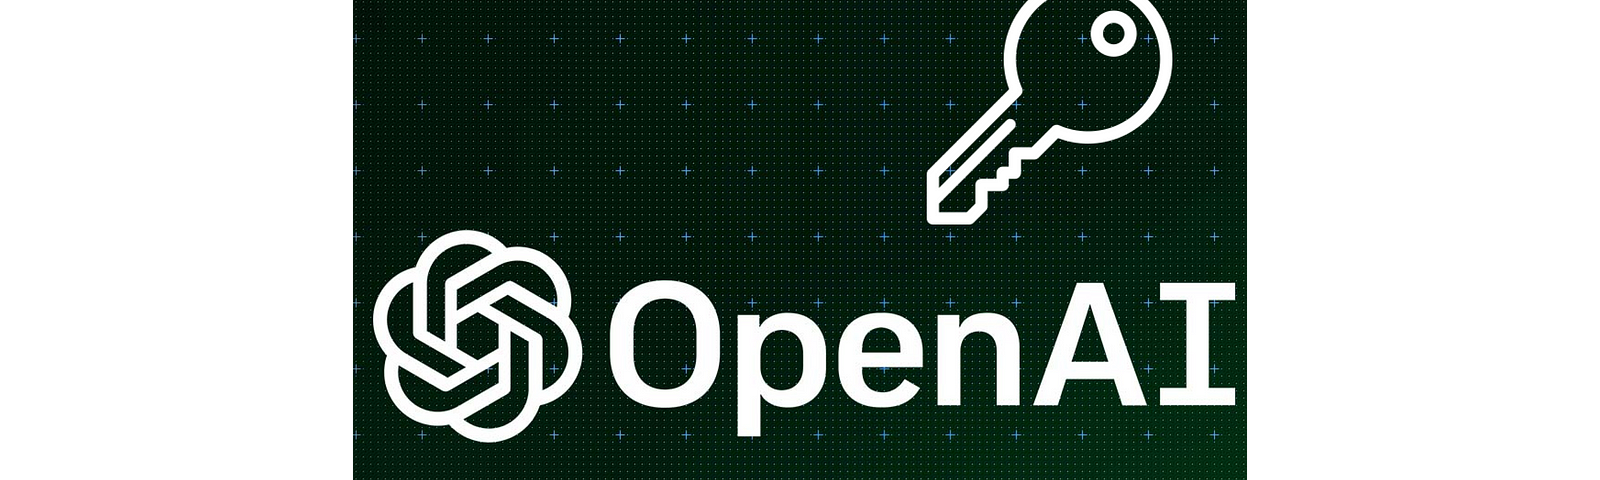 Self-made image. OpenAI API key.